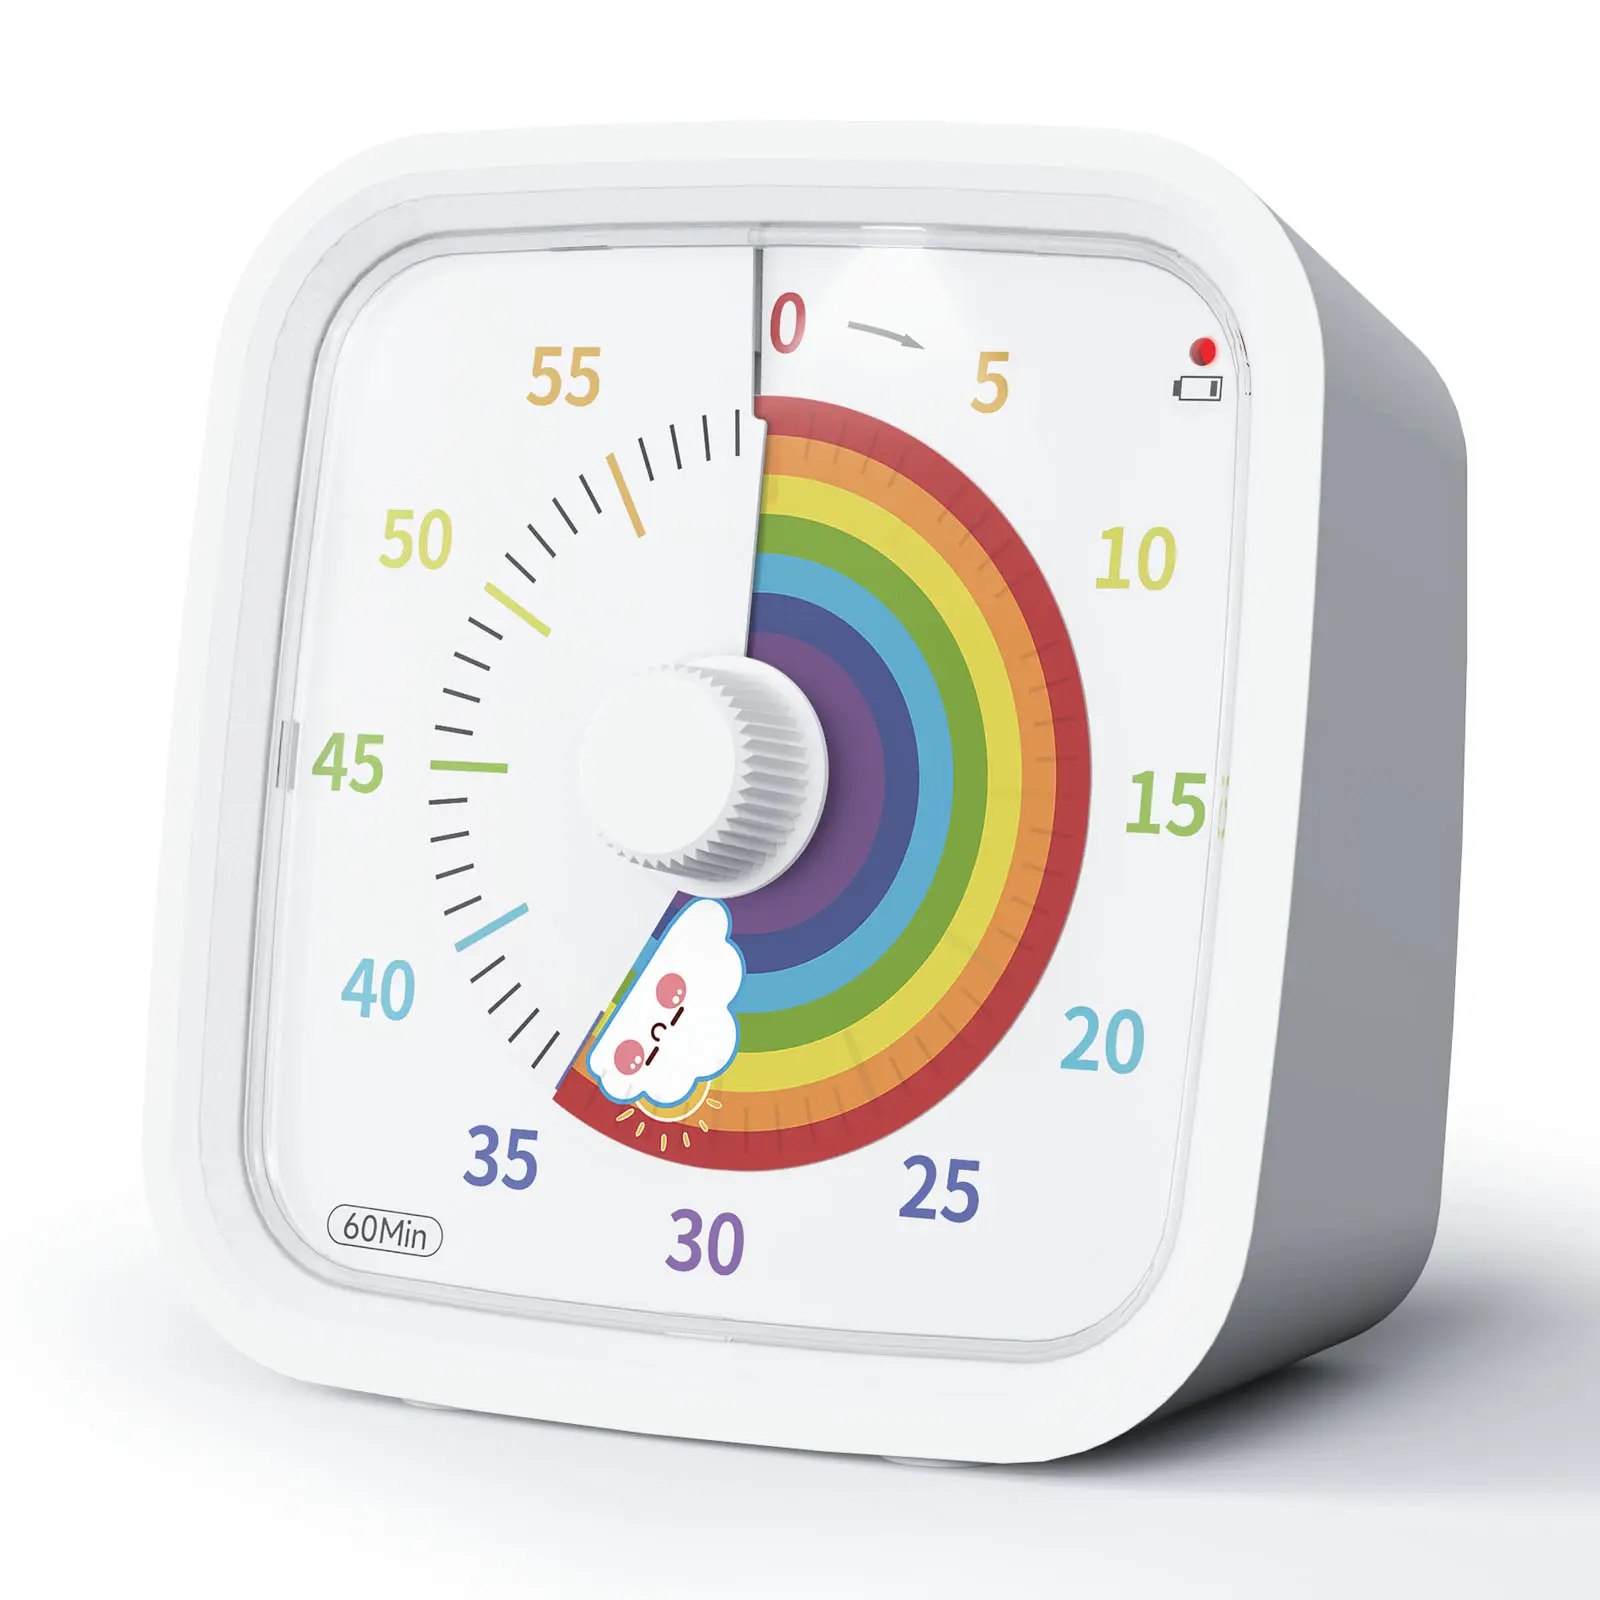 Yunbaoit OEM verimlilik zamanlayıcı Google 60 dakika zaman yönetimi sessiz çalışma geri sayım mutfak zamanlayıcı çocuklar için görsel zamanlayıcı